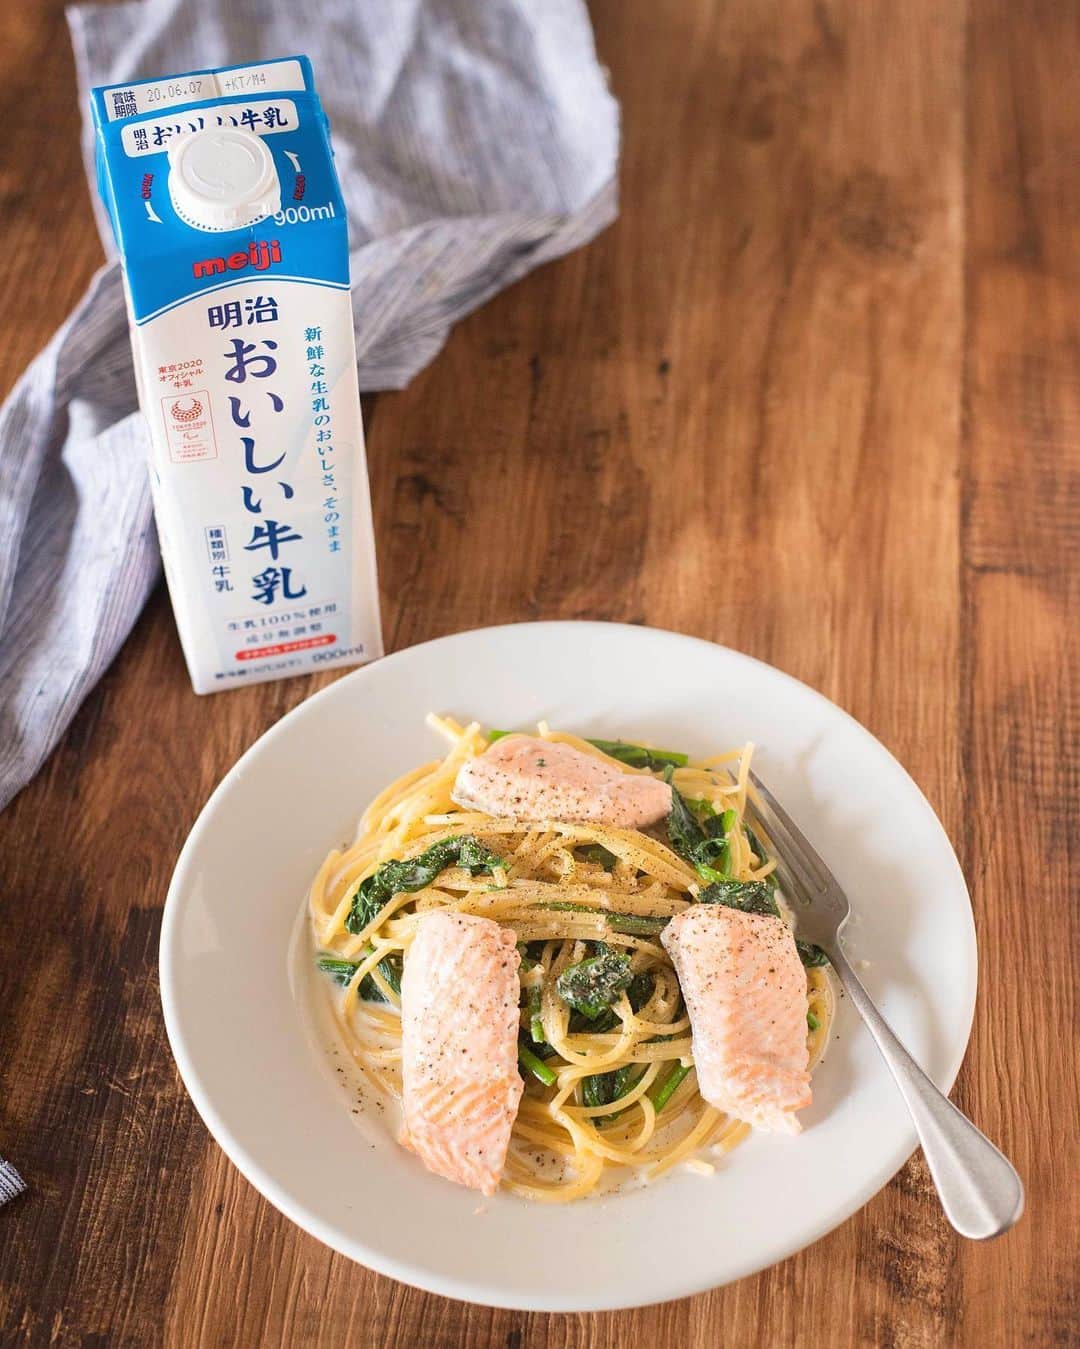 Iguchi Takuto... おうちごはんおじさんのインスタグラム：「🍳Today’s kitchen(レシピあり📝)﻿ •サーモンとほうれん草のミルクスパゲッティー 🍝🐮﻿ 明治おいしい牛乳を使って、簡単美味いミルクスパゲッティ。﻿ 全国の酪農家の皆さんの力になるために、﻿ 今日も牛乳消費メニューを紹介します！🥛﻿ ﻿ 簡単でとっても美味しいパスタ☺️﻿ ミルクと鮭の旨味が効いてて、ほうれん草もマッチ！﻿ すぐに真似できるので、是非やってみて下さいね😚✨﻿ ﻿ ﻿ 📝レシピ※ホームページ内容転載﻿ (https://www.meijioishiigyunyu.com/recipe/detail/212.html)﻿ ﻿ 🐮材料(2人分)﻿ ・明治おいしい牛乳200ml﻿ ・スパゲッティー160g（ゆで時間9分のものを使用）﻿ ・水300ml位﻿ ・ほうれん草150g﻿ ・サーモン1切れ﻿ ・塩小さじ1/2﻿ ・こしょう適宜﻿ ﻿ 🍳作り方﻿ STEP1﻿ フライパンに水を入れ沸騰後、塩を入れ、半分に折ったスパゲッティーを入れ中火で5分位茹でる。﻿ ﻿ STEP2﻿ ほうれん草をきれいに洗い4cm幅に切り、サーモンは一口大に切る。﻿ ﻿ STEP3﻿ 1の鍋に「明治おいしい牛乳」、サーモンを入れ、アルデンテになる前まで火を通す。（計約11分）﻿ ﻿ STEP4﻿ 水分がなくなってきたら、ほうれん草を入れ、全体に大きく混ぜながら火を通し、塩（分量外）で味を調える。﻿ ﻿ STEP5﻿ 器に盛り、こしょうをふる。﻿ ﻿ POINT﻿ ・牛乳に含まれるカルシウムによりほうれん草のえぐみ（シュウ酸）を外に出すことができます。﻿ ・パスタをゆでる行程の中に牛乳を入れ込むことで、麺にもしっかり牛乳の旨味が浸み込みます。﻿ ﻿ ﻿ また、「Twitterでも明治おいしい牛乳の公式アカウントでもキャンペーンやっているようです！是非検索してみてくださいね！☻﻿ ﻿ ﻿ 美味しいで日本を元気に꒰⍨꒱.+*﻿ ﻿ ━…━…━…━…━…━…━…━…━…━﻿ ﻿ ▼.料理教室主宰しています🍳(..開講祝1年💐)﻿ Foodies Labo(@foodies_labo)﻿ 簡単×美味しいに拘り、都内で料理教室を開催しています。﻿ 料理初心者•初参加の方•お友達との参加も大歓迎🙆‍♂️🙆‍♀️﻿ まずは気軽にフォローして下さい！﻿ ﻿ ▼.デリバリー専門のレストランを始めました🍴 ﻿ Foodies Tokyo(@foodies_tokyo)﻿ 不定期での営業となりますが、﻿ Uber Eatsに出店しています！﻿ イベントなども都度行っていますので、﻿ 詳しくは、公式アカウントをご覧下さい！﻿ ﻿ ▼.ストーリーズのハイライトをまとめました🎥﻿ 過去にストーリーズで配信した、イベントの様子や、﻿ 企業さまとのお仕事、日々の料理のシーン、﻿ 自身の掲載記事など、アイコン毎にまとめています。﻿ ご興味ある方はご覧下さい！﻿ ﻿ ━…━…━…━…━…━…━…━…━…━﻿ #牛乳アクション #明治おいしい牛乳 #PR #明治﻿ #世界牛乳の日 #牛乳の日 #牛乳月間 #worldmilkday﻿ #おうちごはん #おうち時間 #stayhome﻿ #牛乳レシピ #ミルクレシピ #簡単レシピ﻿ #らくうま飯#らくうま料理#らくうま料理家#らくうま料理研究家#料理家#料理研究家#フードスタイリスト#井口タクト#おうちごはん#おうちごはんおじさん#おうちごはんLover#料理男子#料理好きな人と繋がりたい#Foodstylist#ouchigohan_ojisan#japanesefood」